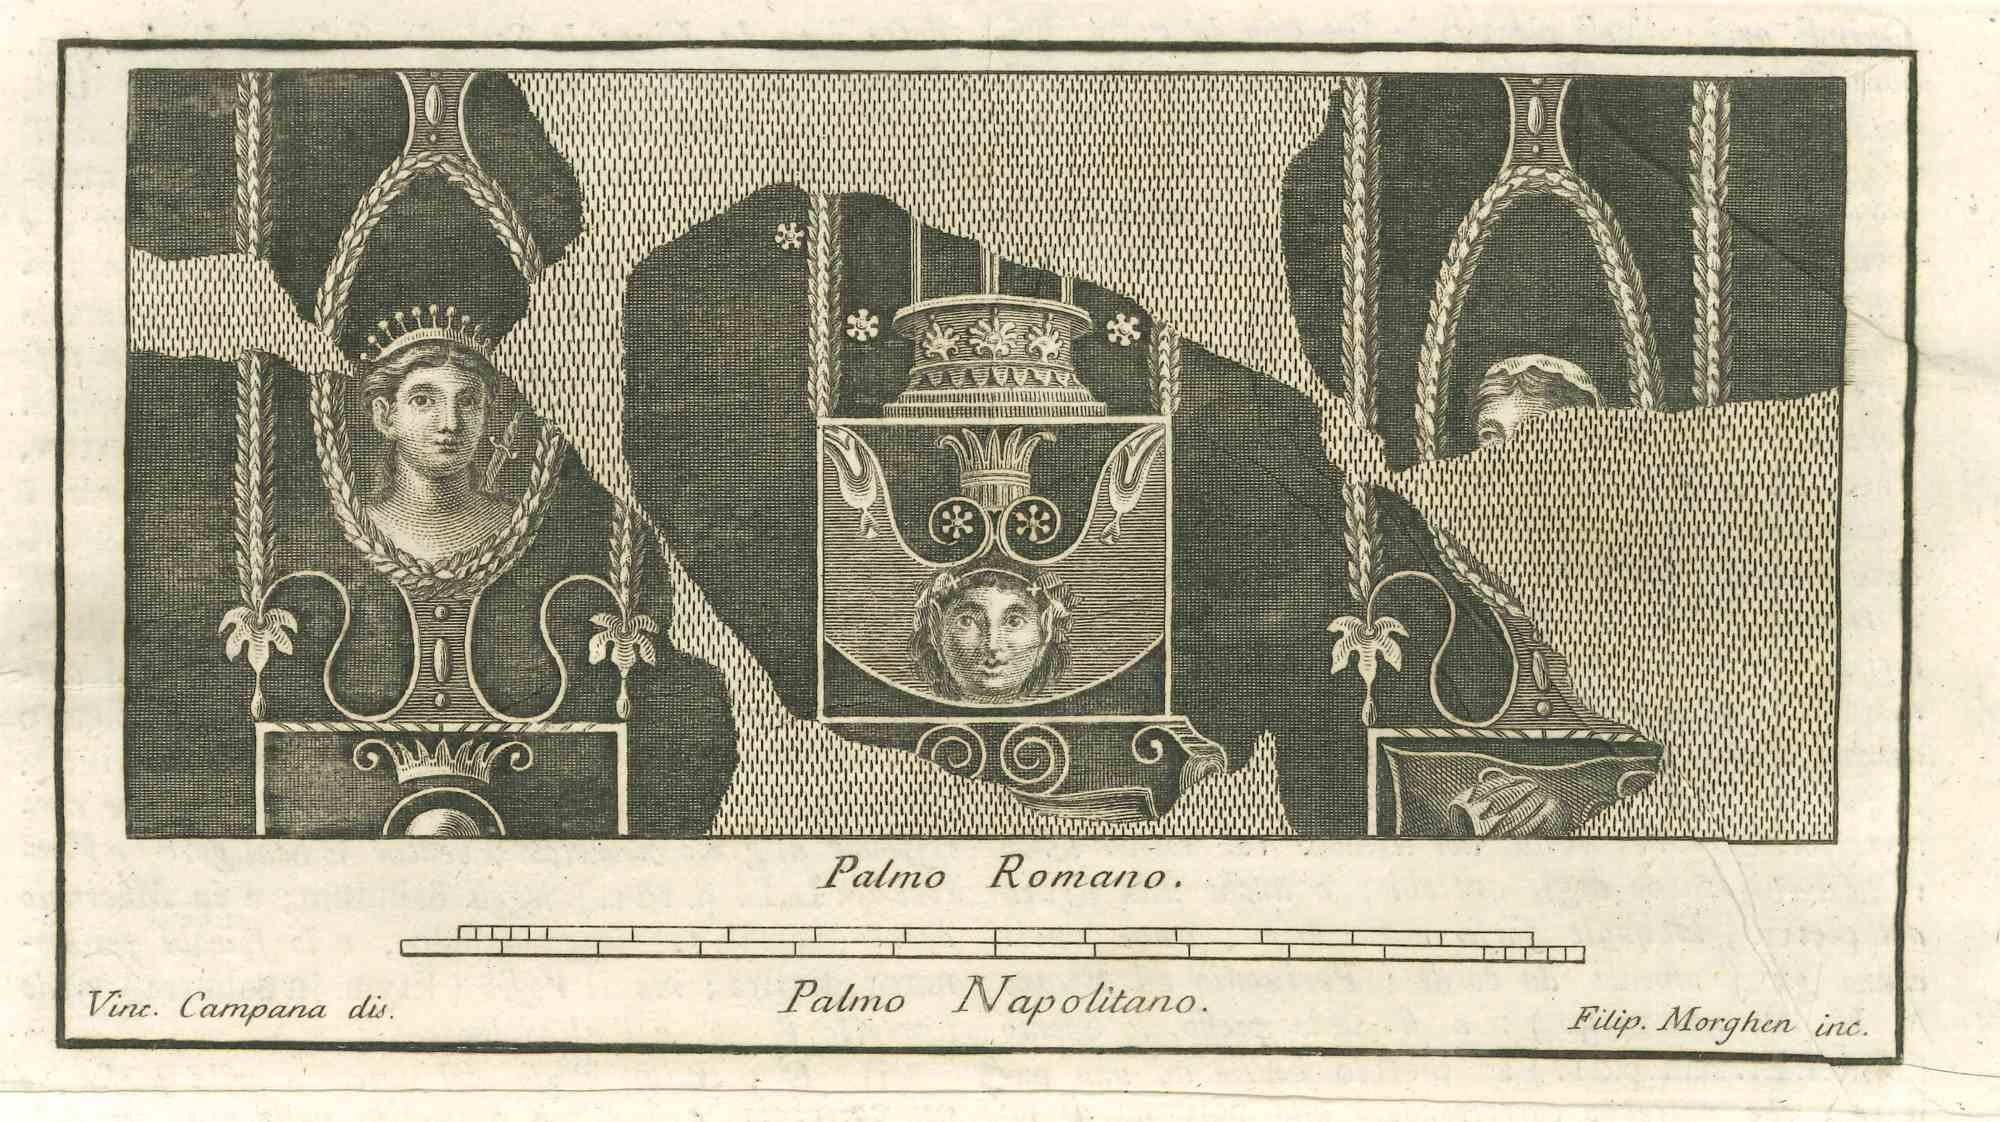 Das pompejanische Fresko aus den "Altertümern von Herculaneum" ist eine Radierung auf Papier von Filippo Morghen aus dem 18. Jahrhundert.

Signiert auf der Platte.

Guter Zustand mit leichten Faltungen.

Die Radierung gehört zu der Druckserie